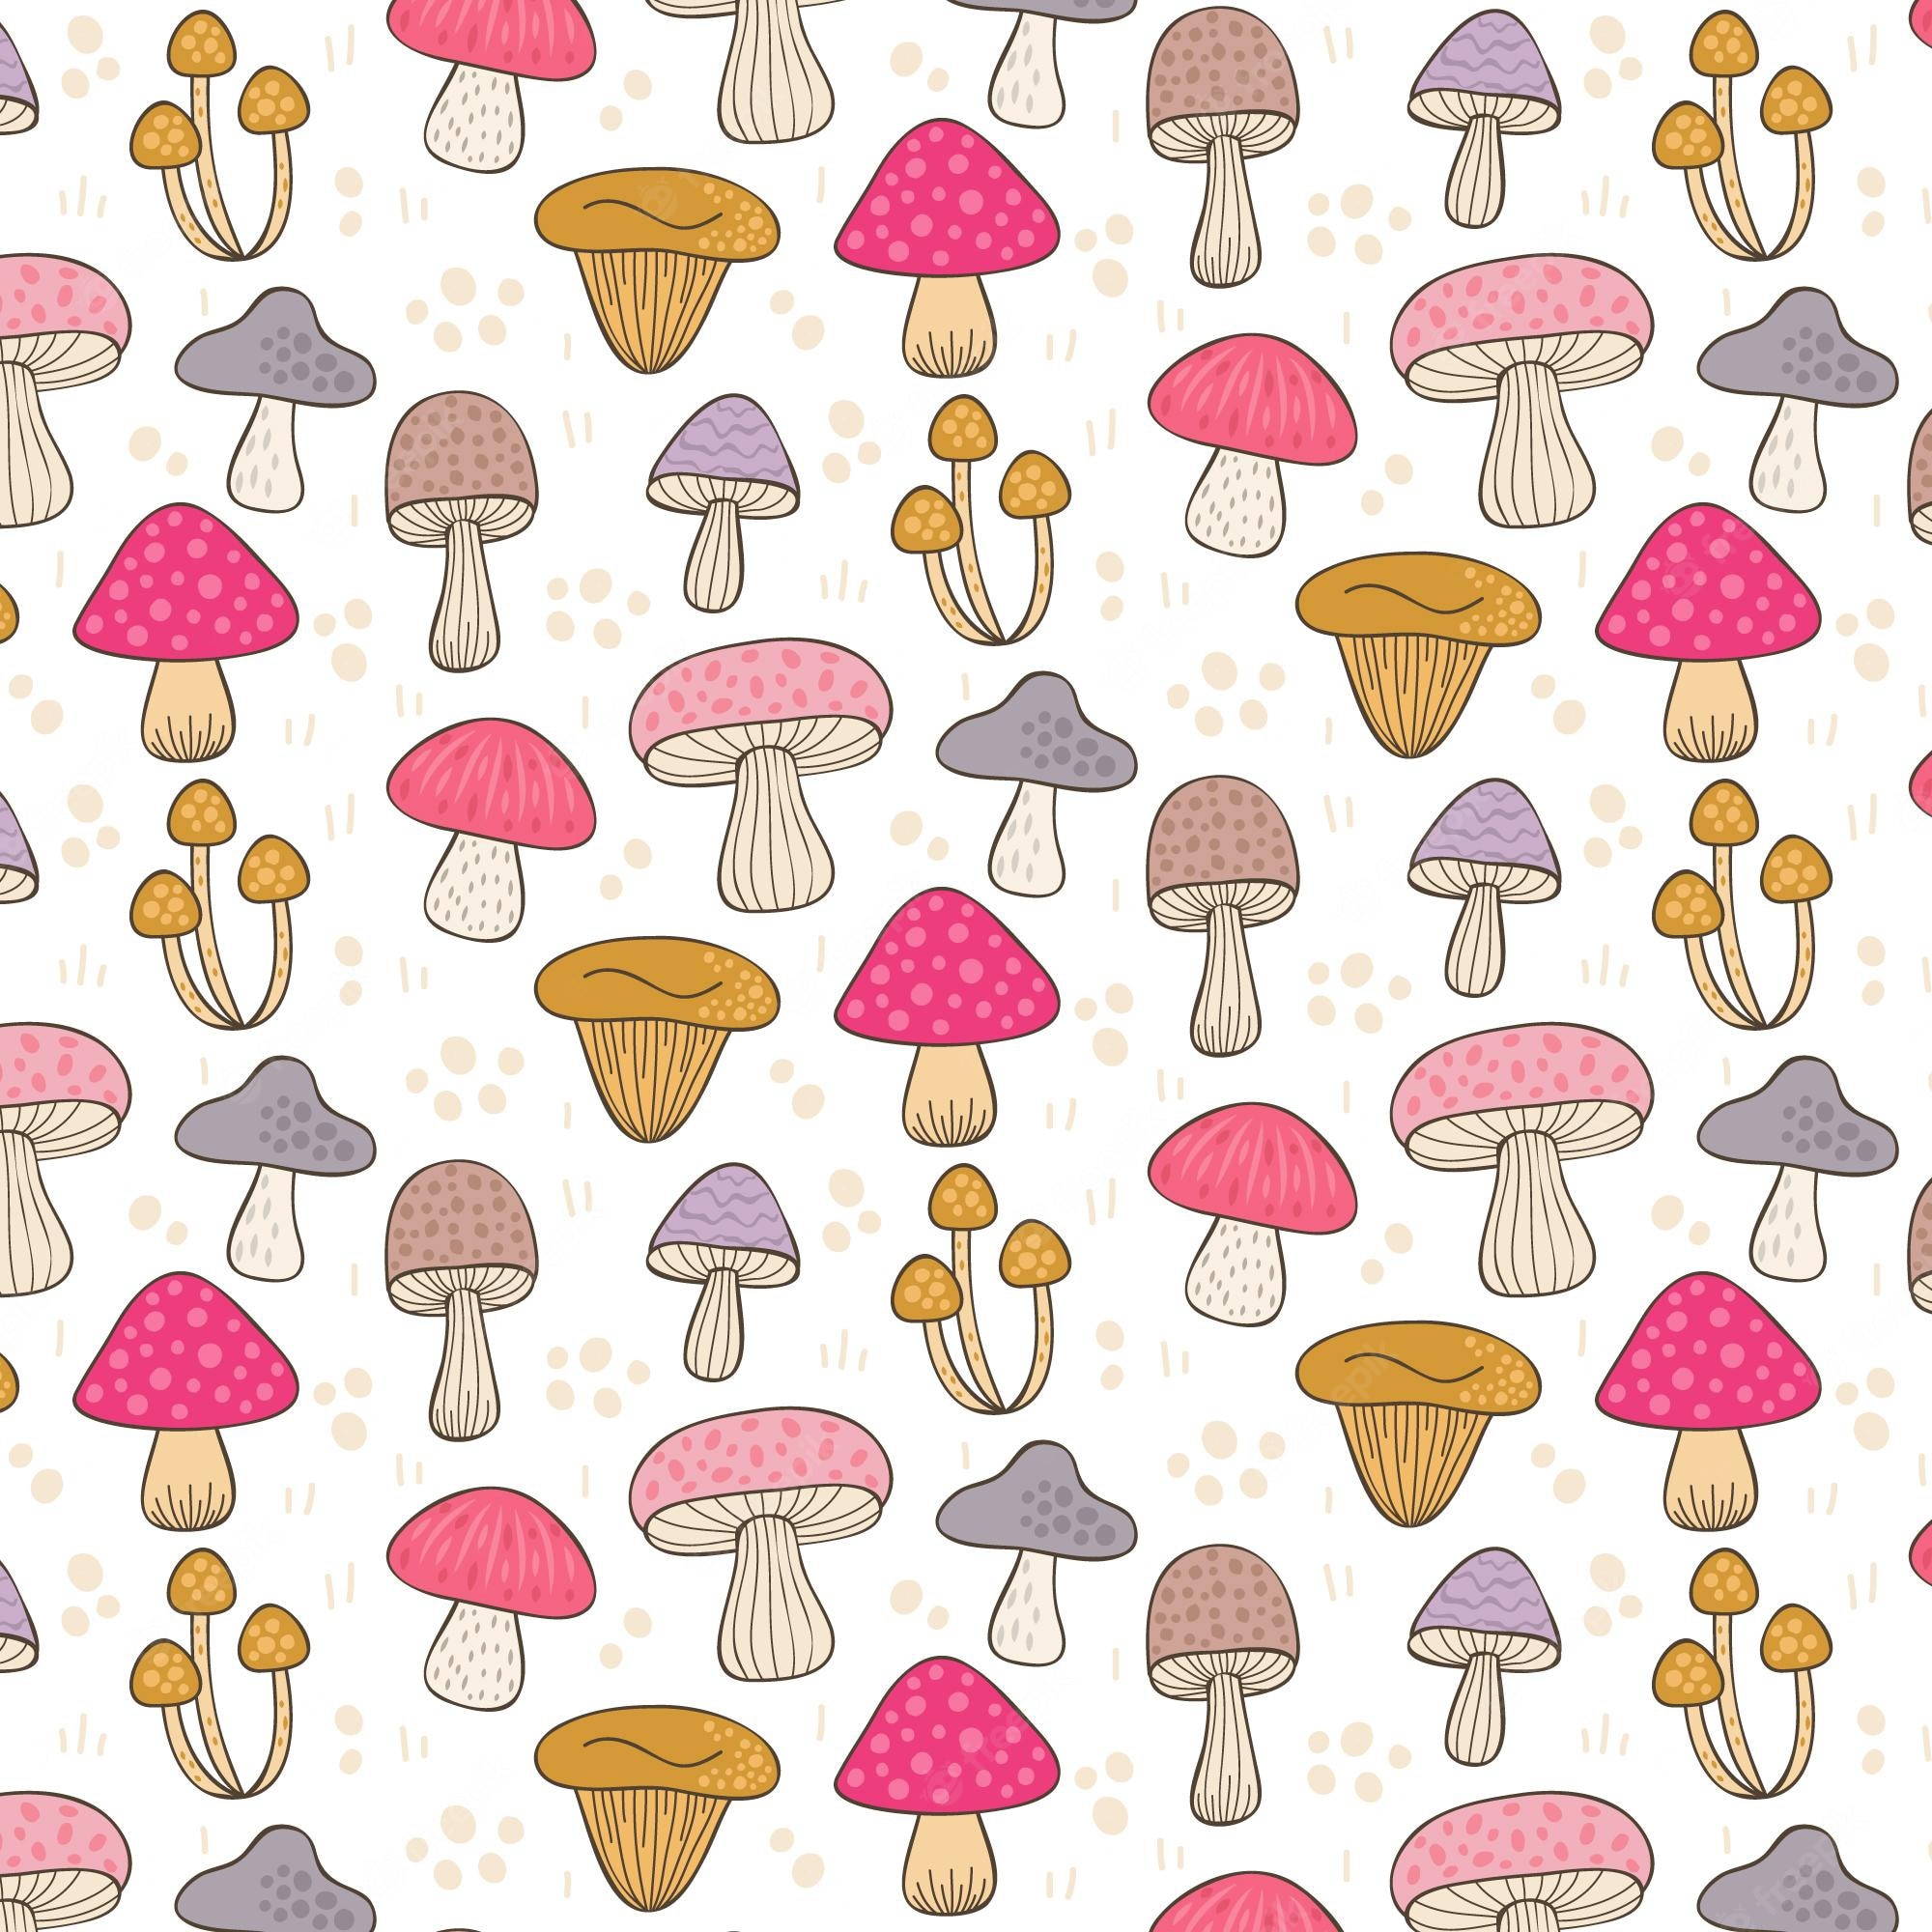 Cute Mushroom Wallpapers